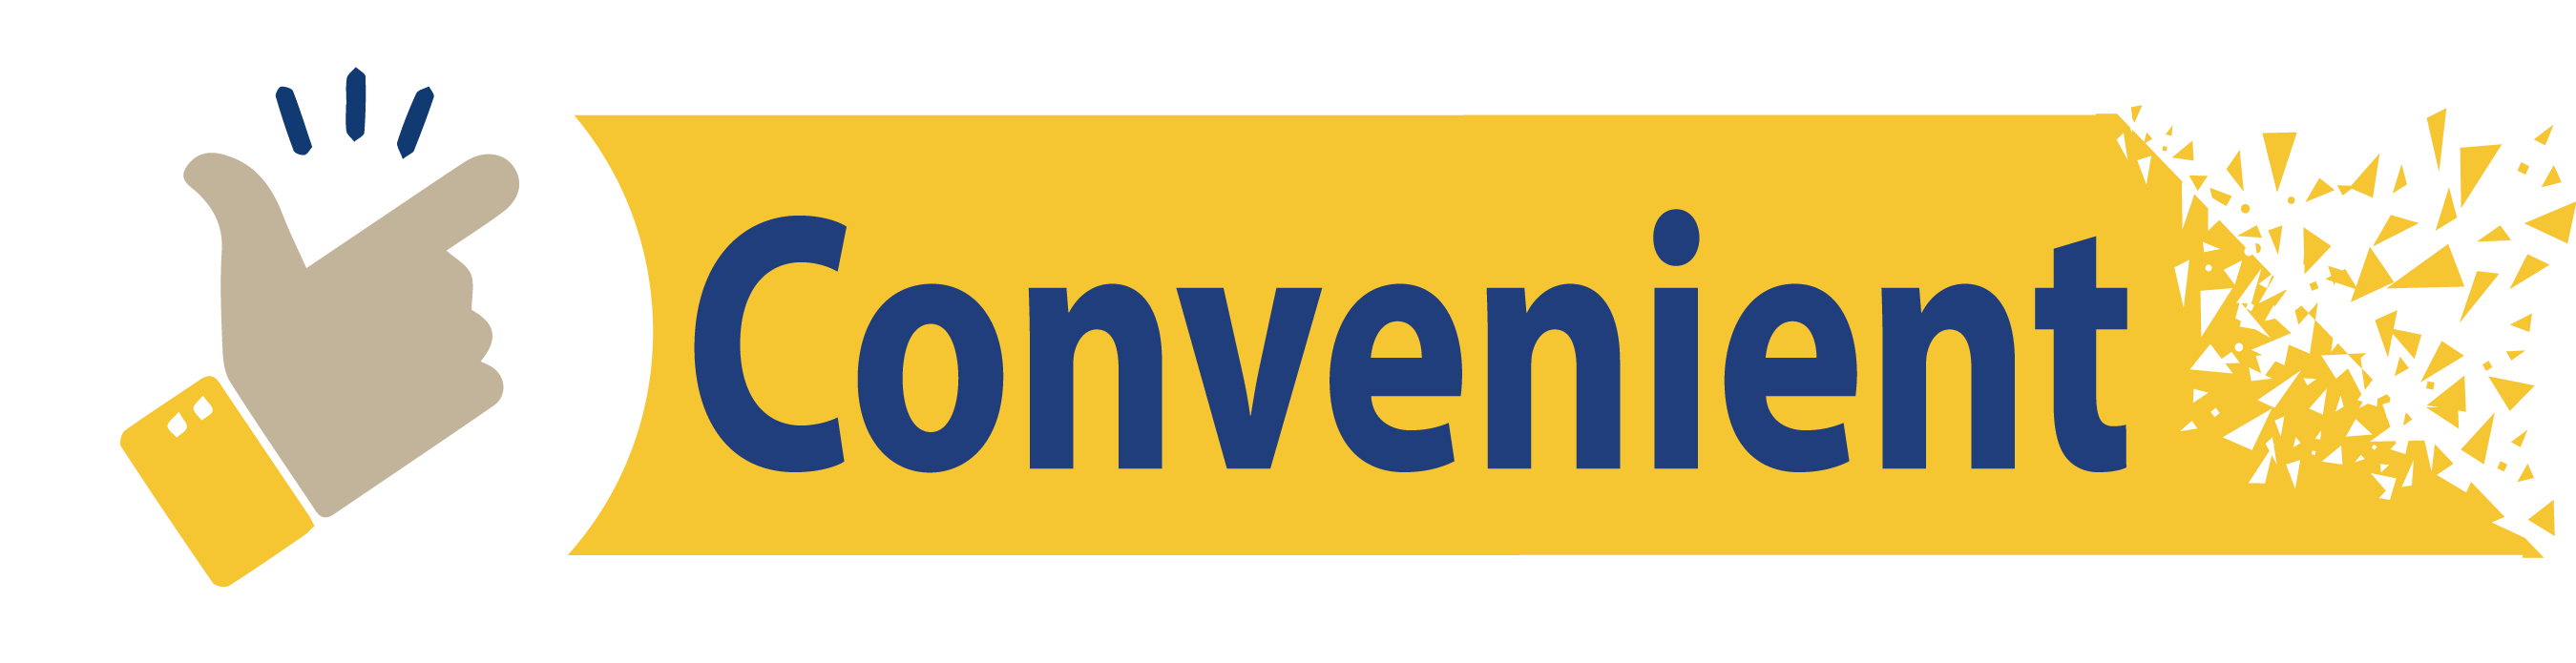 Convenient_6_11zon